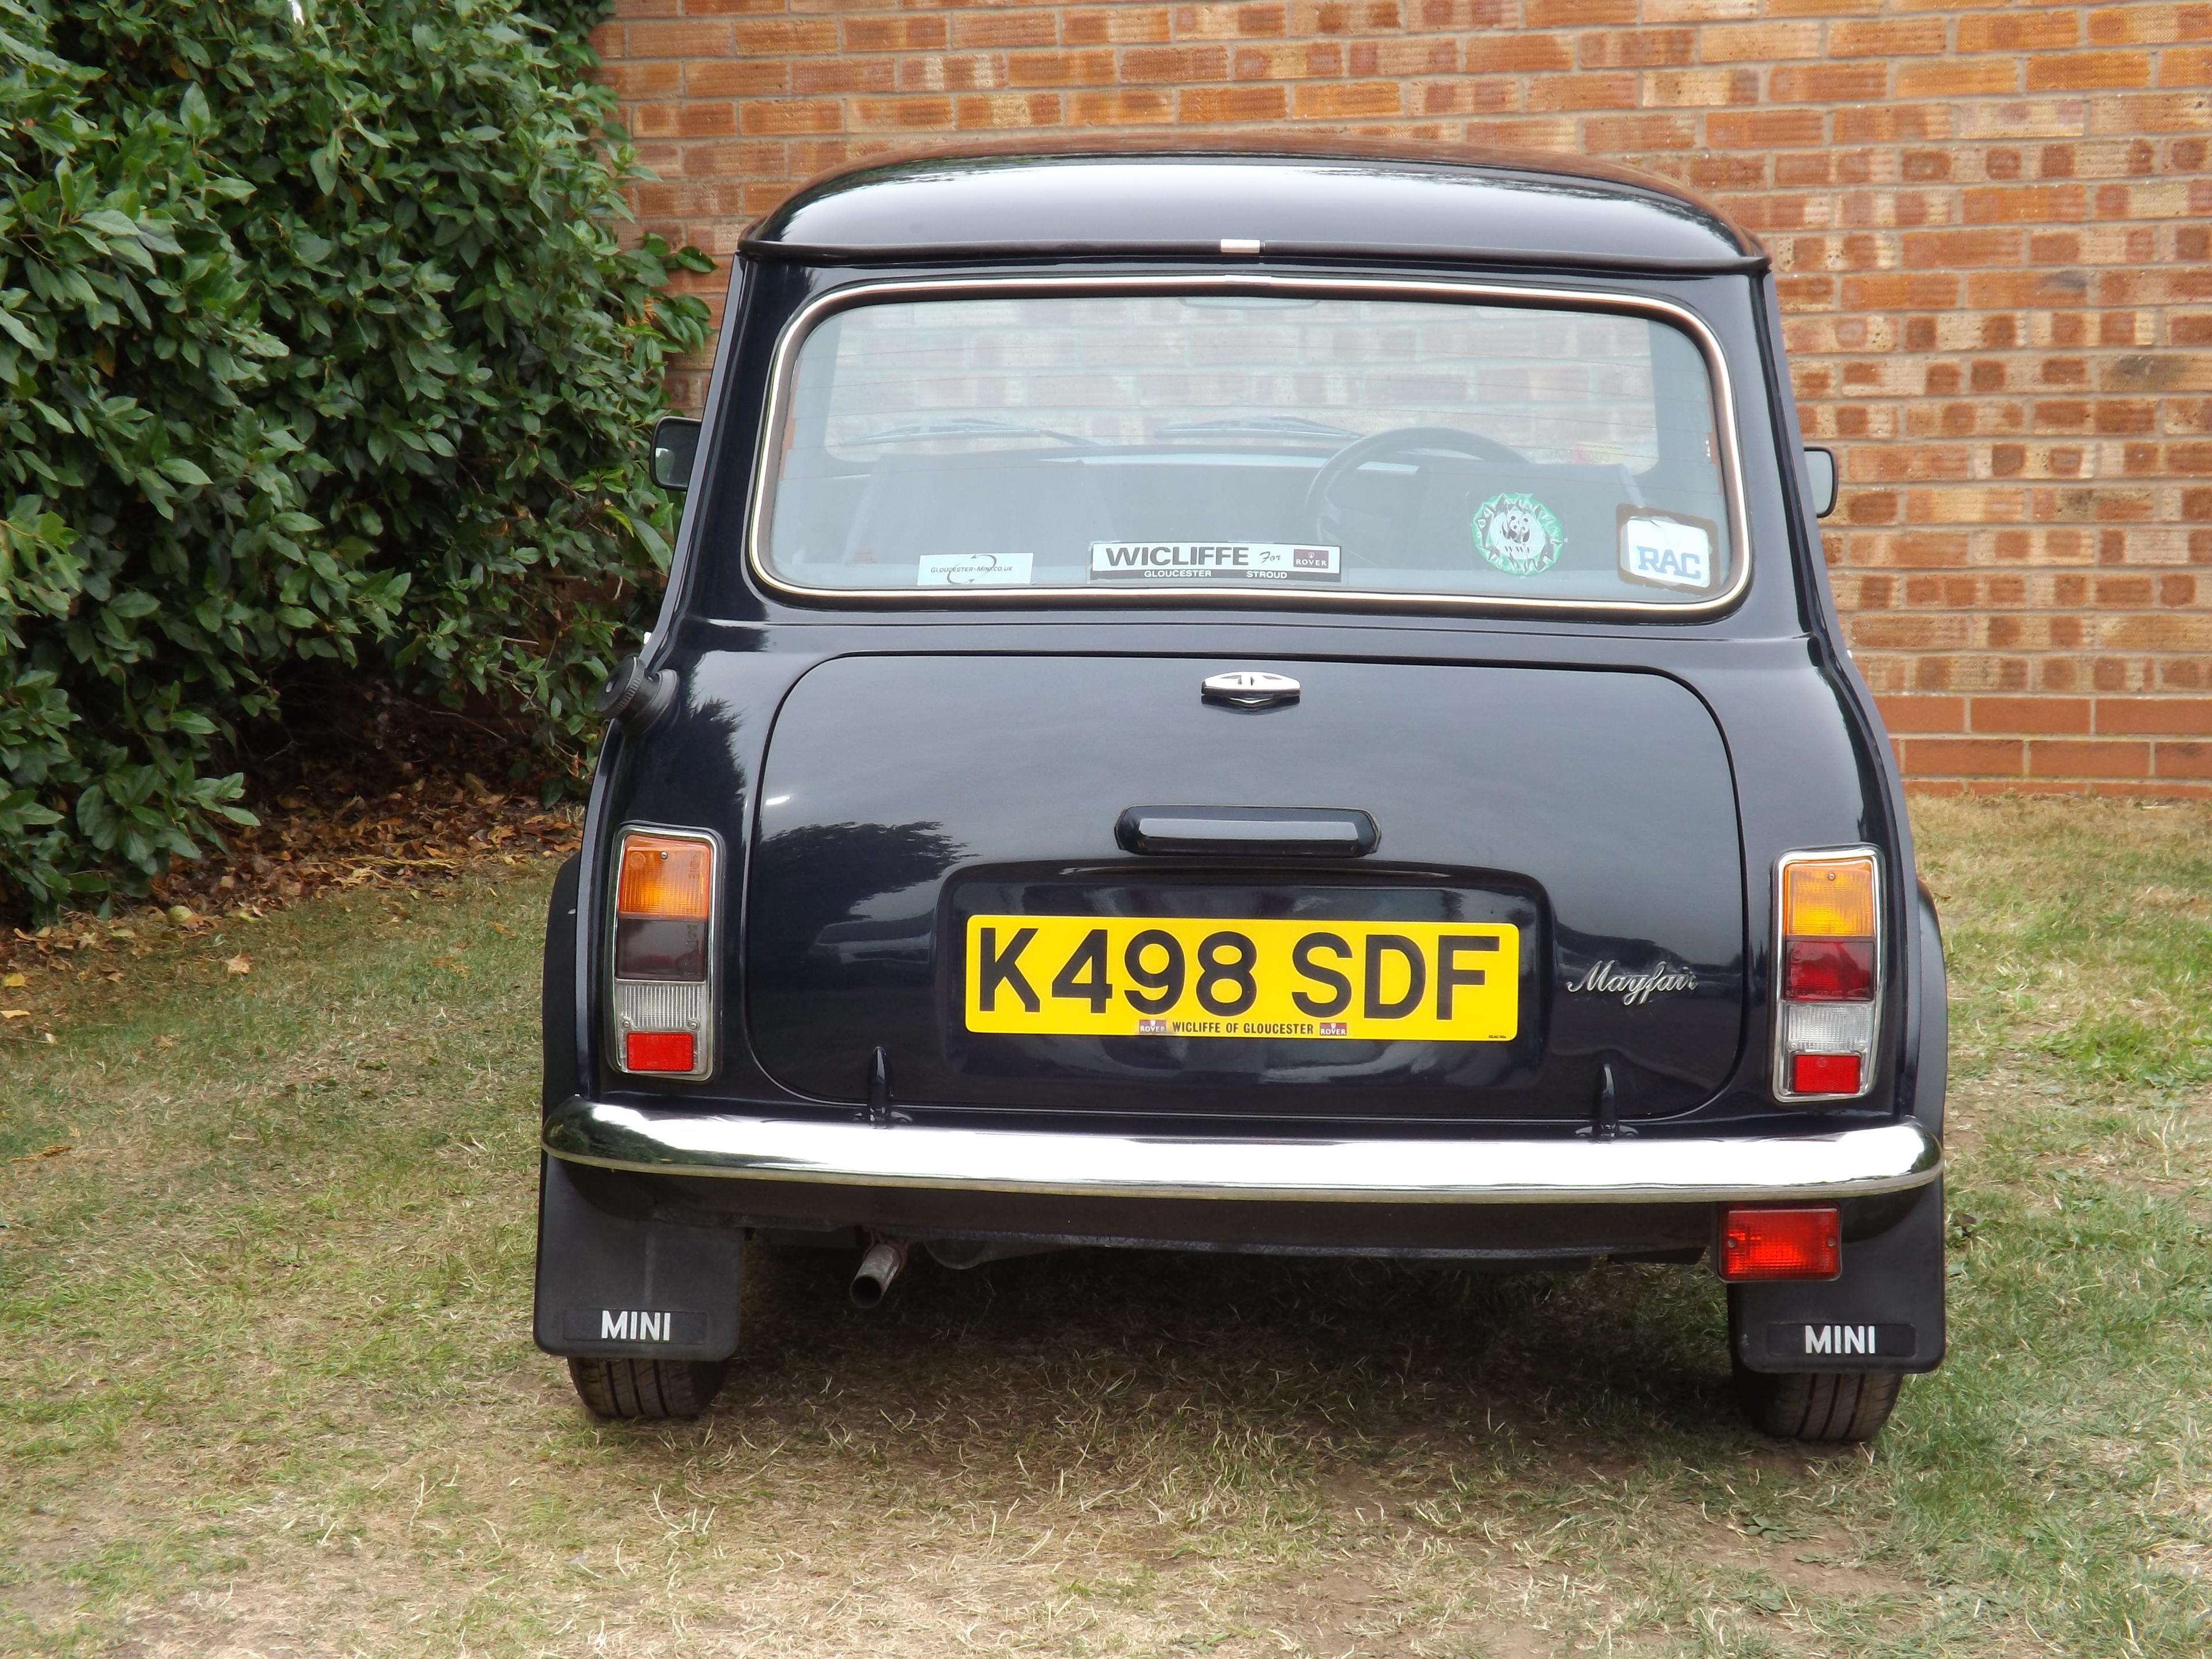 1992 Rover Mini Mayfair